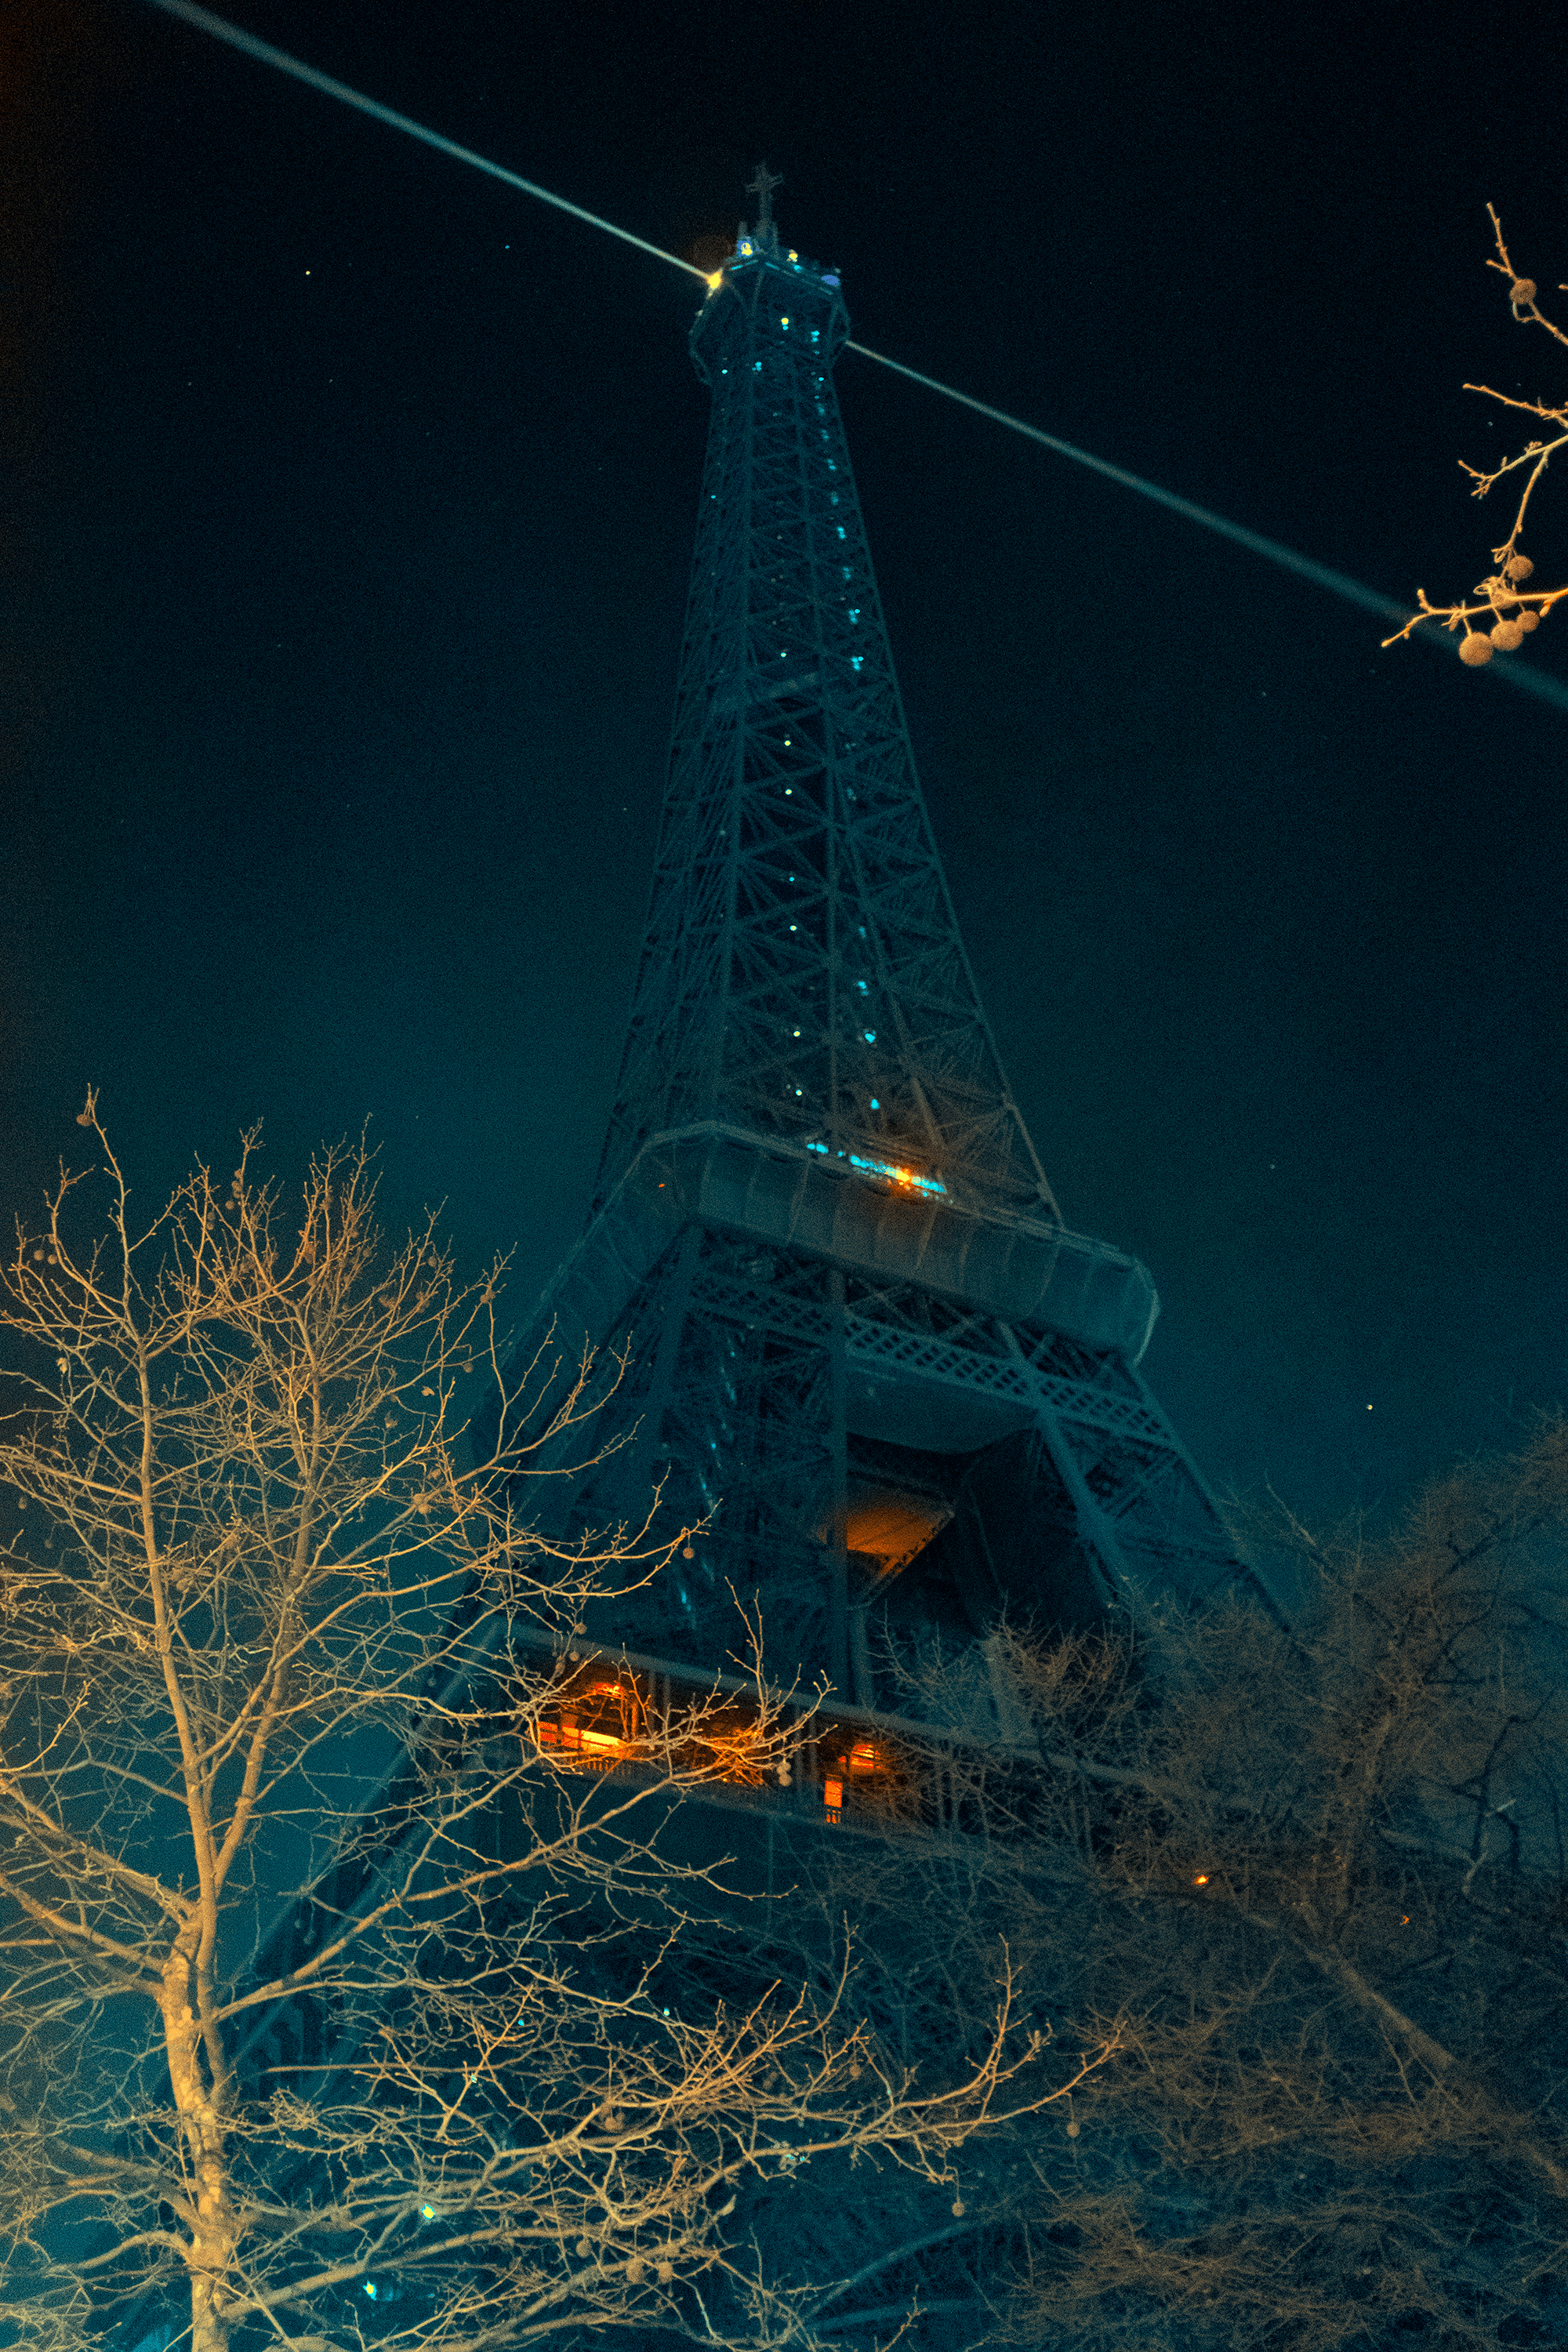 Amour en Paris: The Romance of the Eiffel Tower